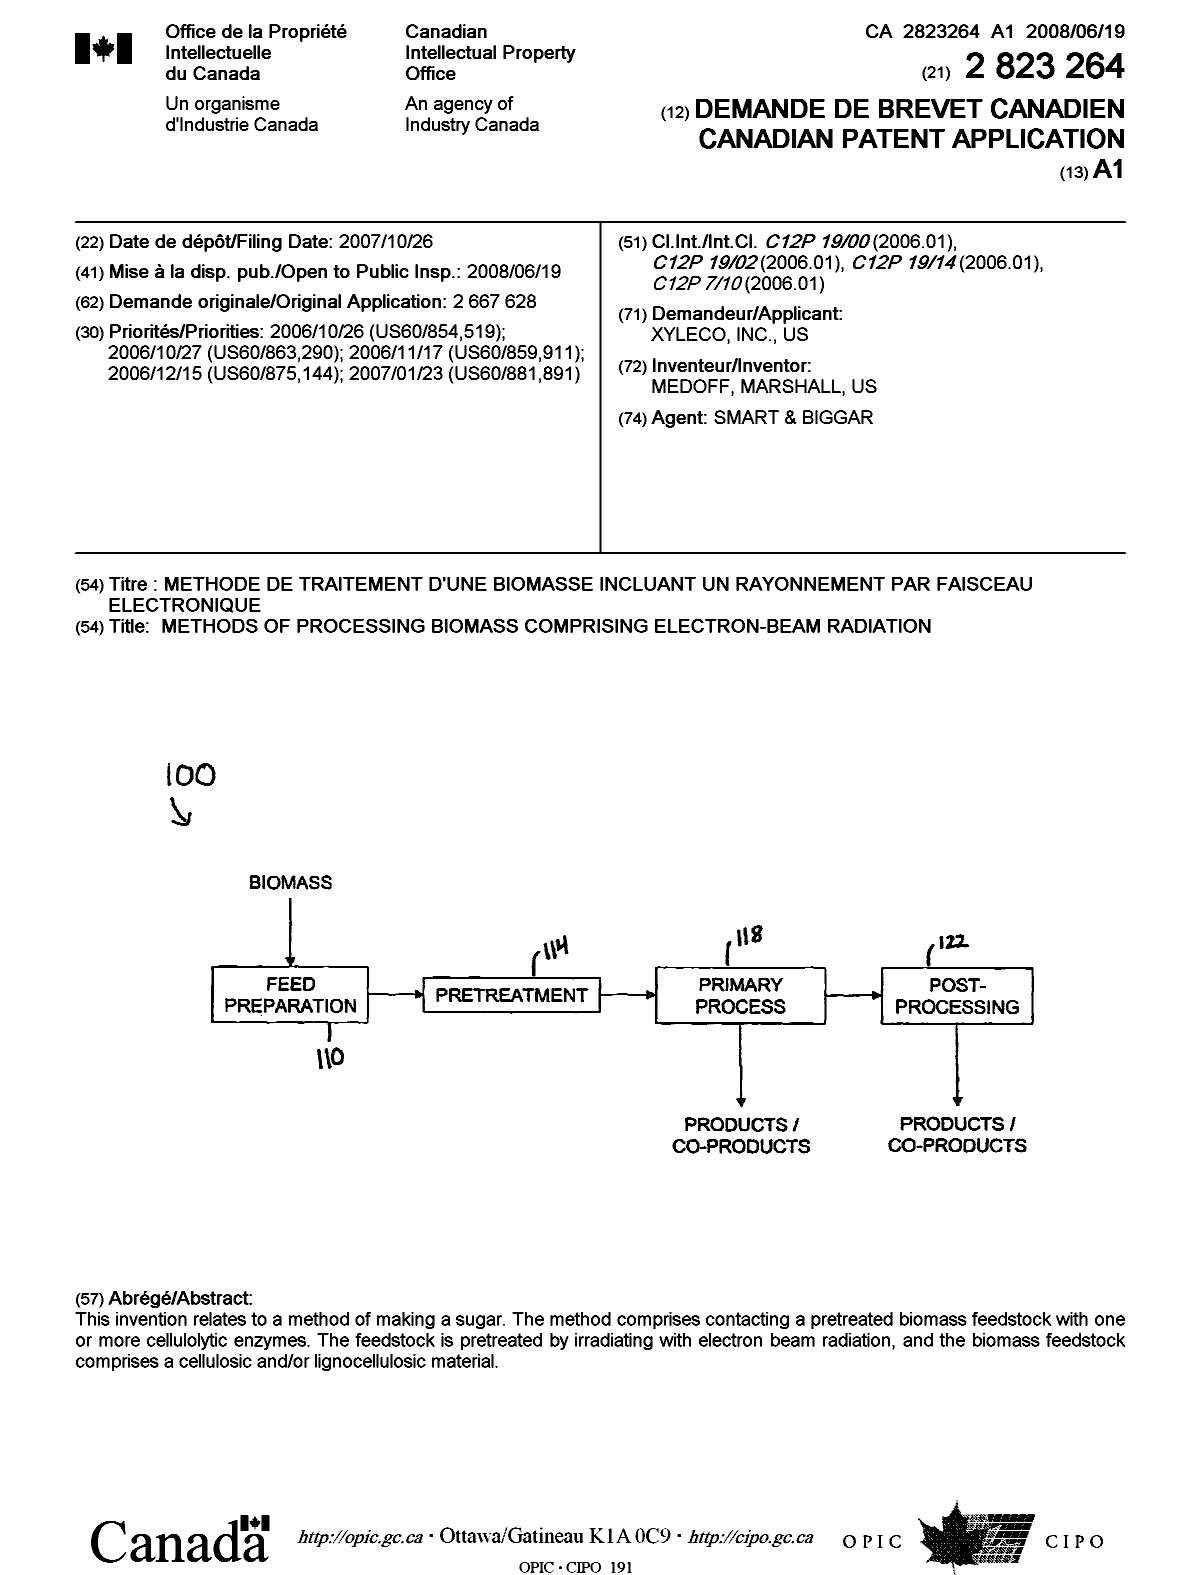 Document de brevet canadien 2823264. Page couverture 20121230. Image 1 de 1